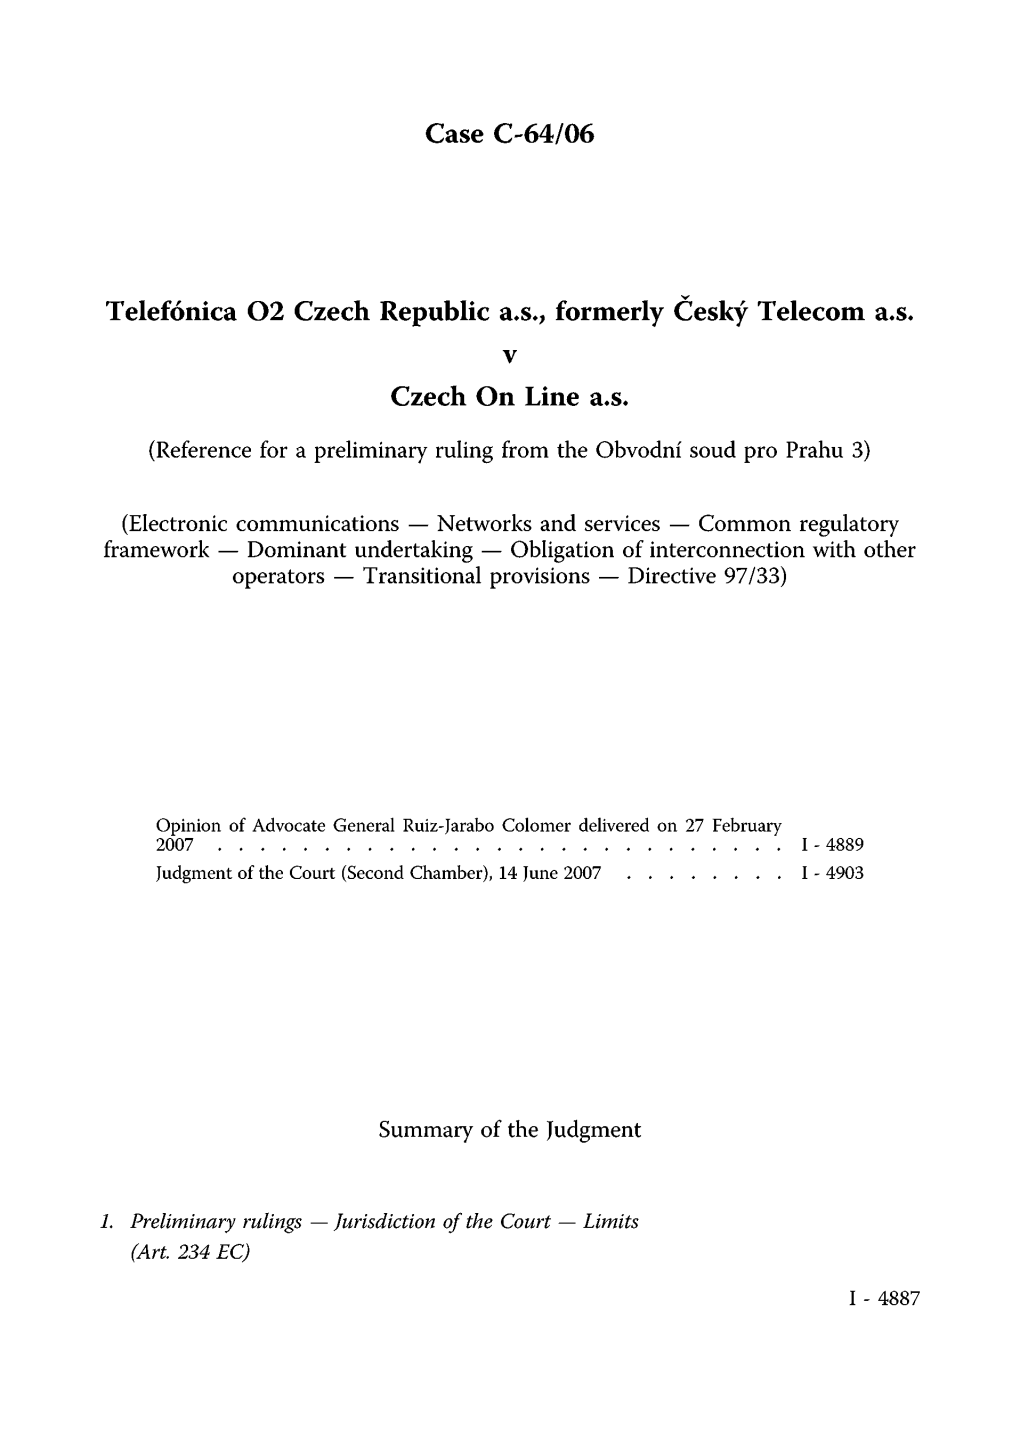 Case C-64/06 Telefonica O2 Czech Republic A.S., Formerly Český